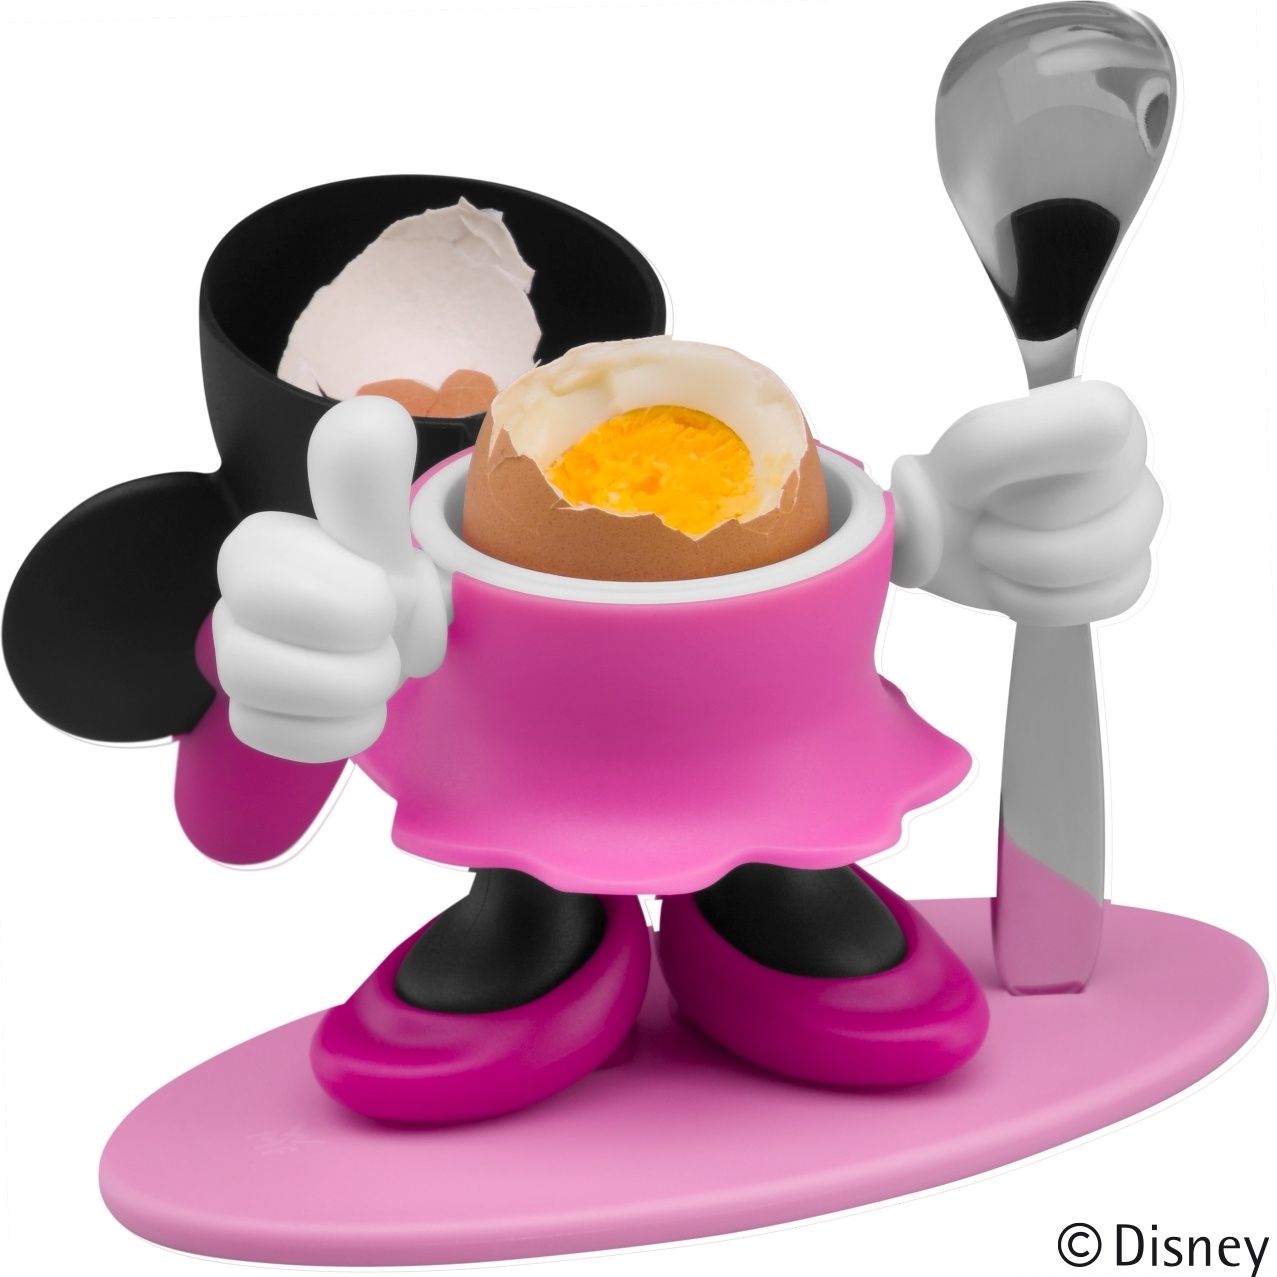 Eierbecher Disney Mickey Mouse mit Löffel – Charisma - Deko